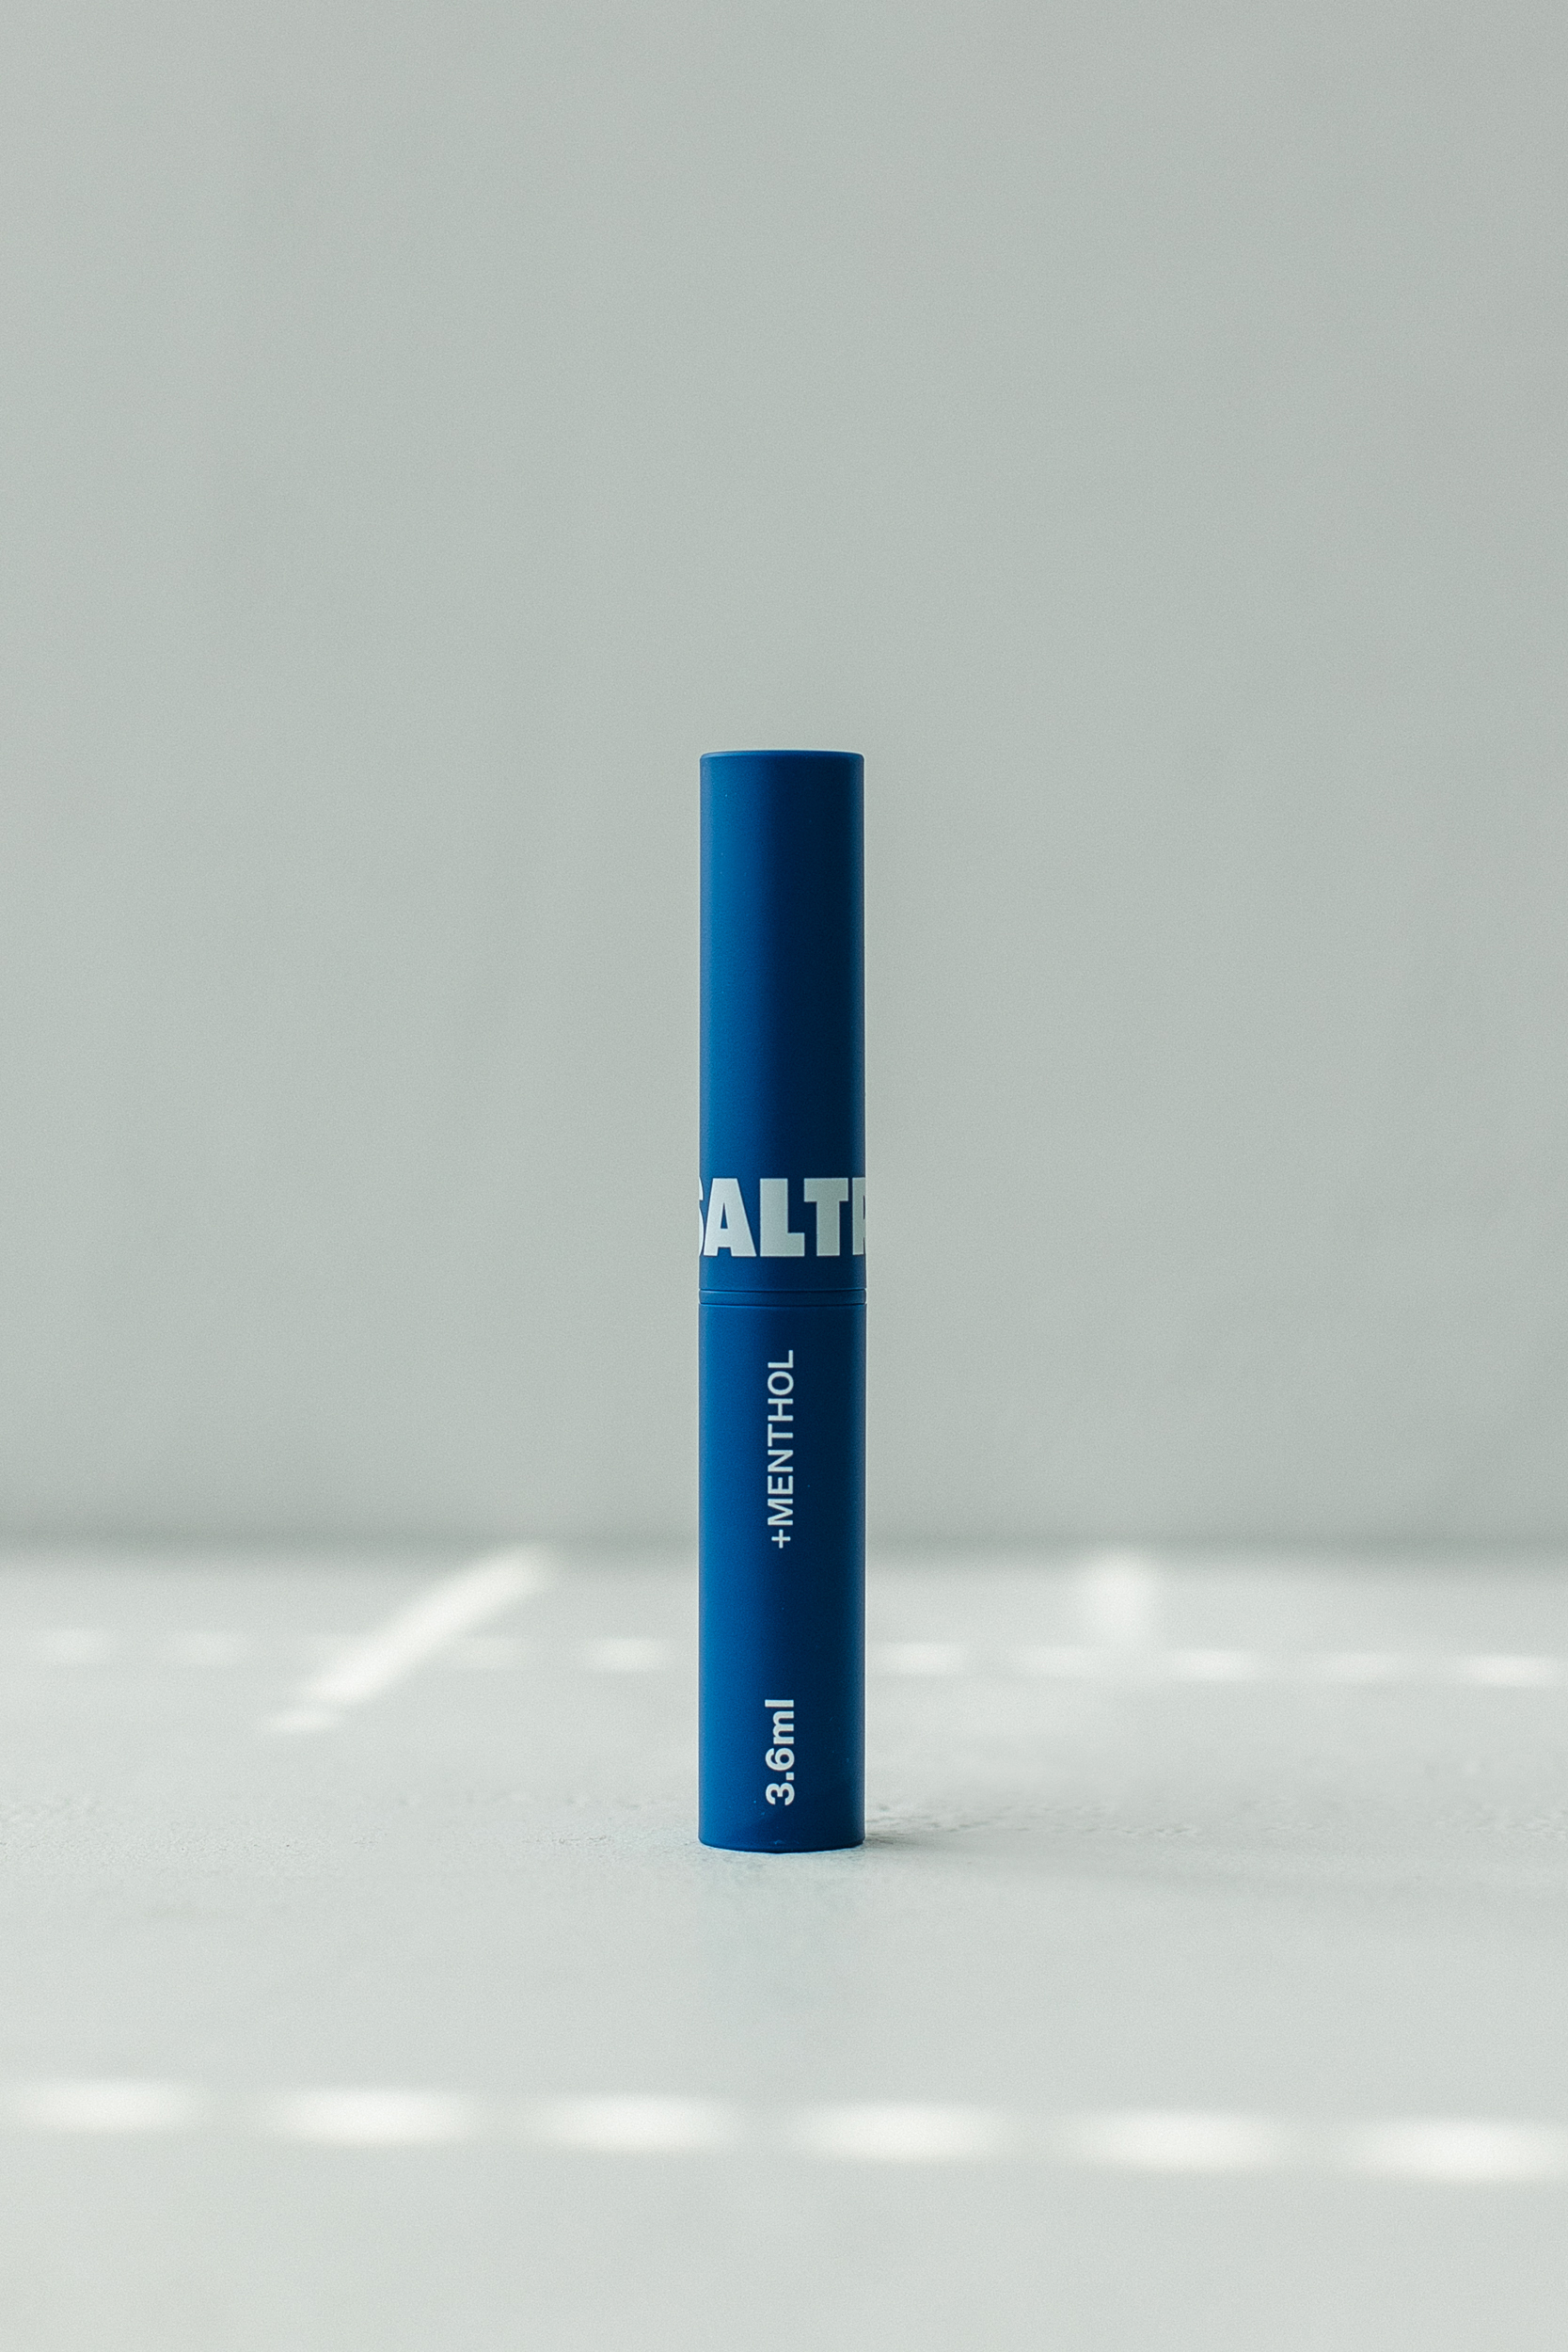 BU// Бальзам для губ с серой солью Ментол SALTRAIN Graysalt Lip Balm - Menthol 3,6ml - фото 1